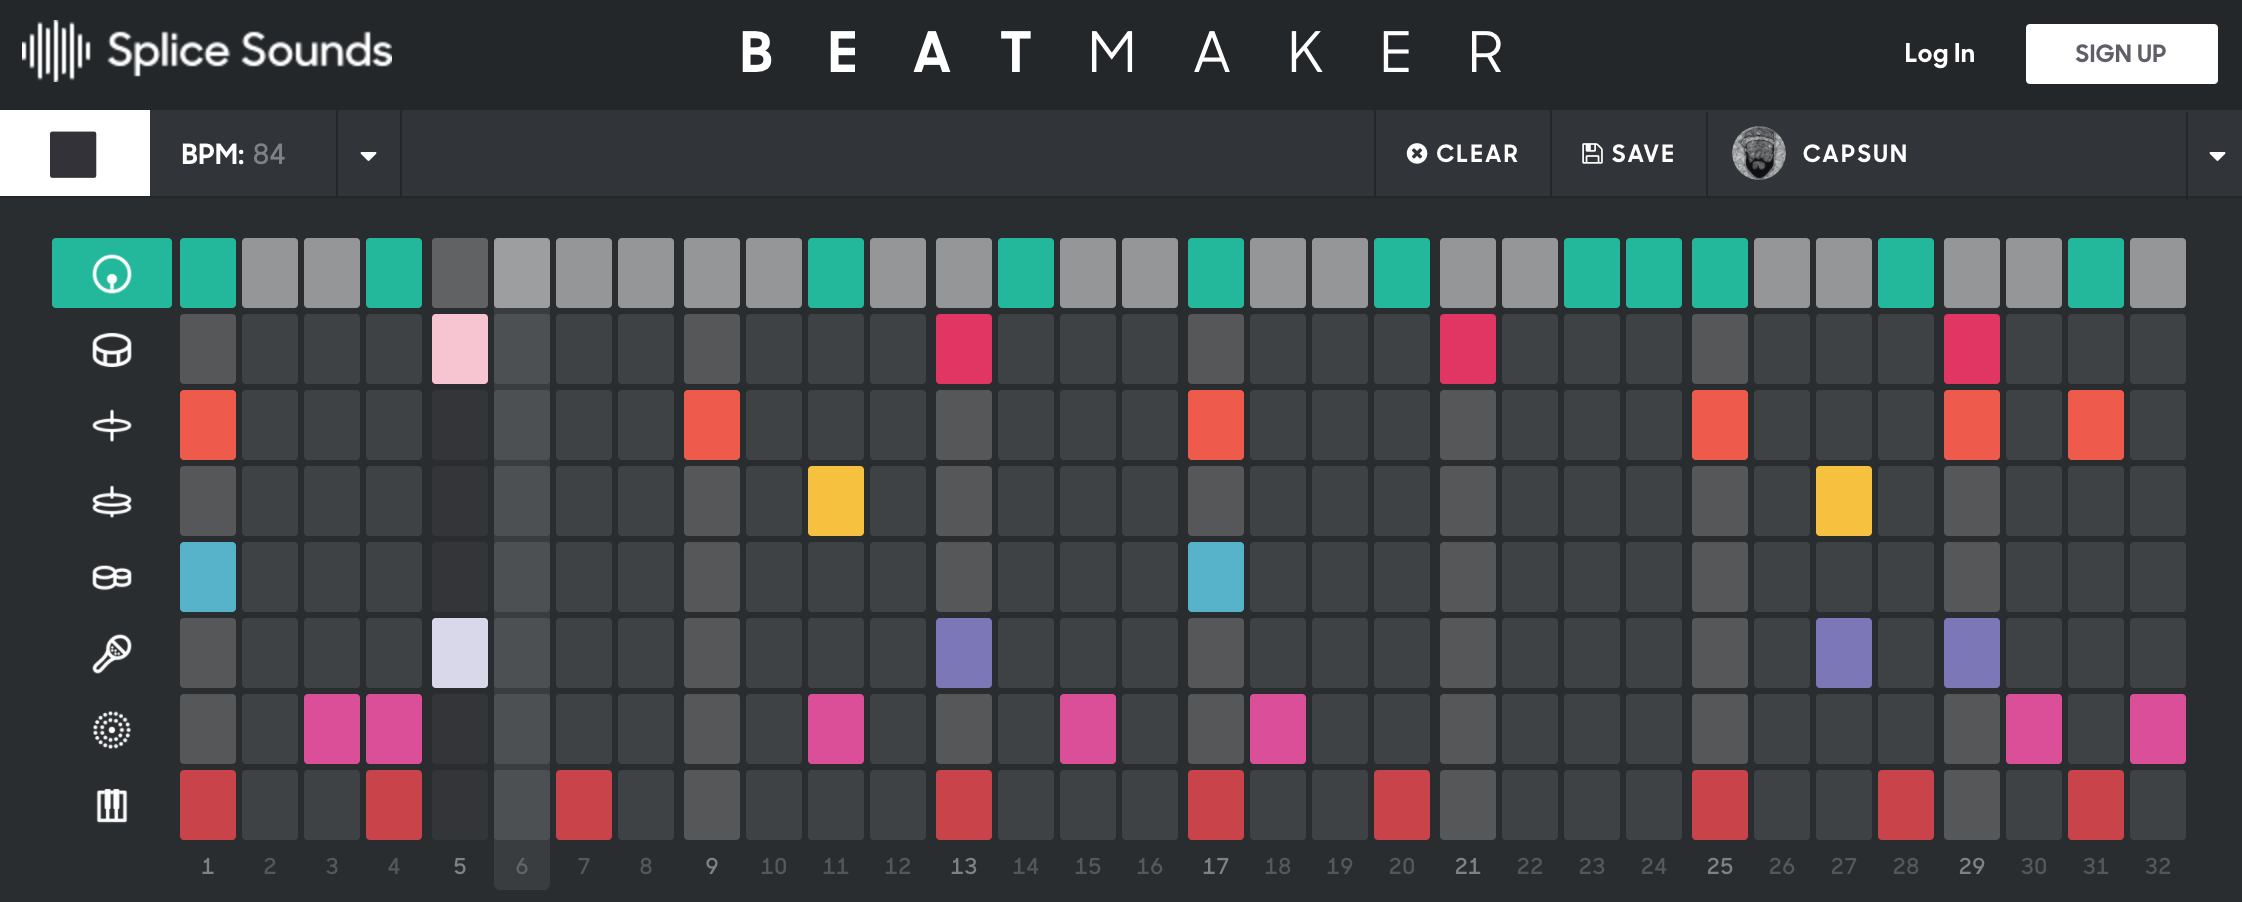 beatmaker google